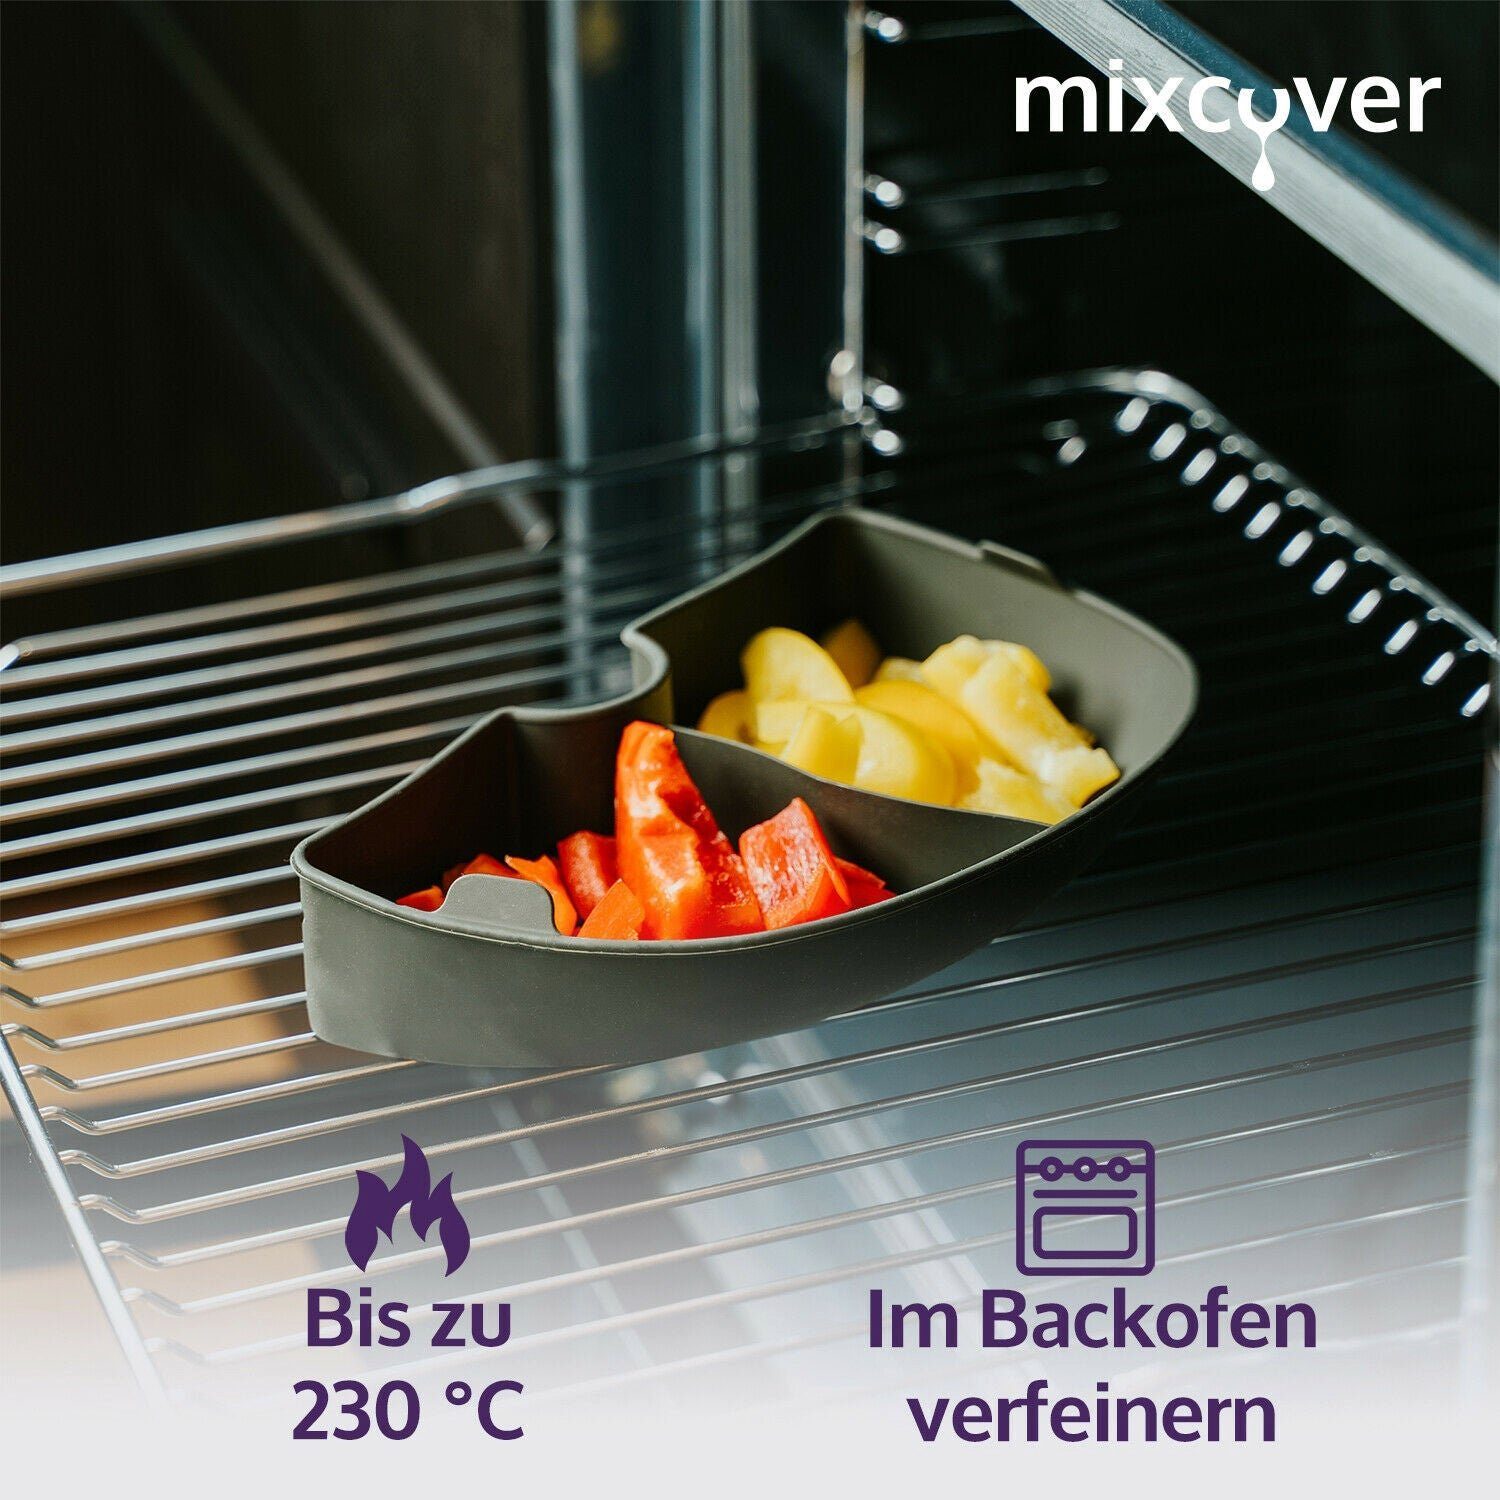 & Küchenmaschinen-Adapter Dampfgarraum (VIERTEL) Connect Garraumteiler Cuisine mixcover Mixcover Smart Monsieur